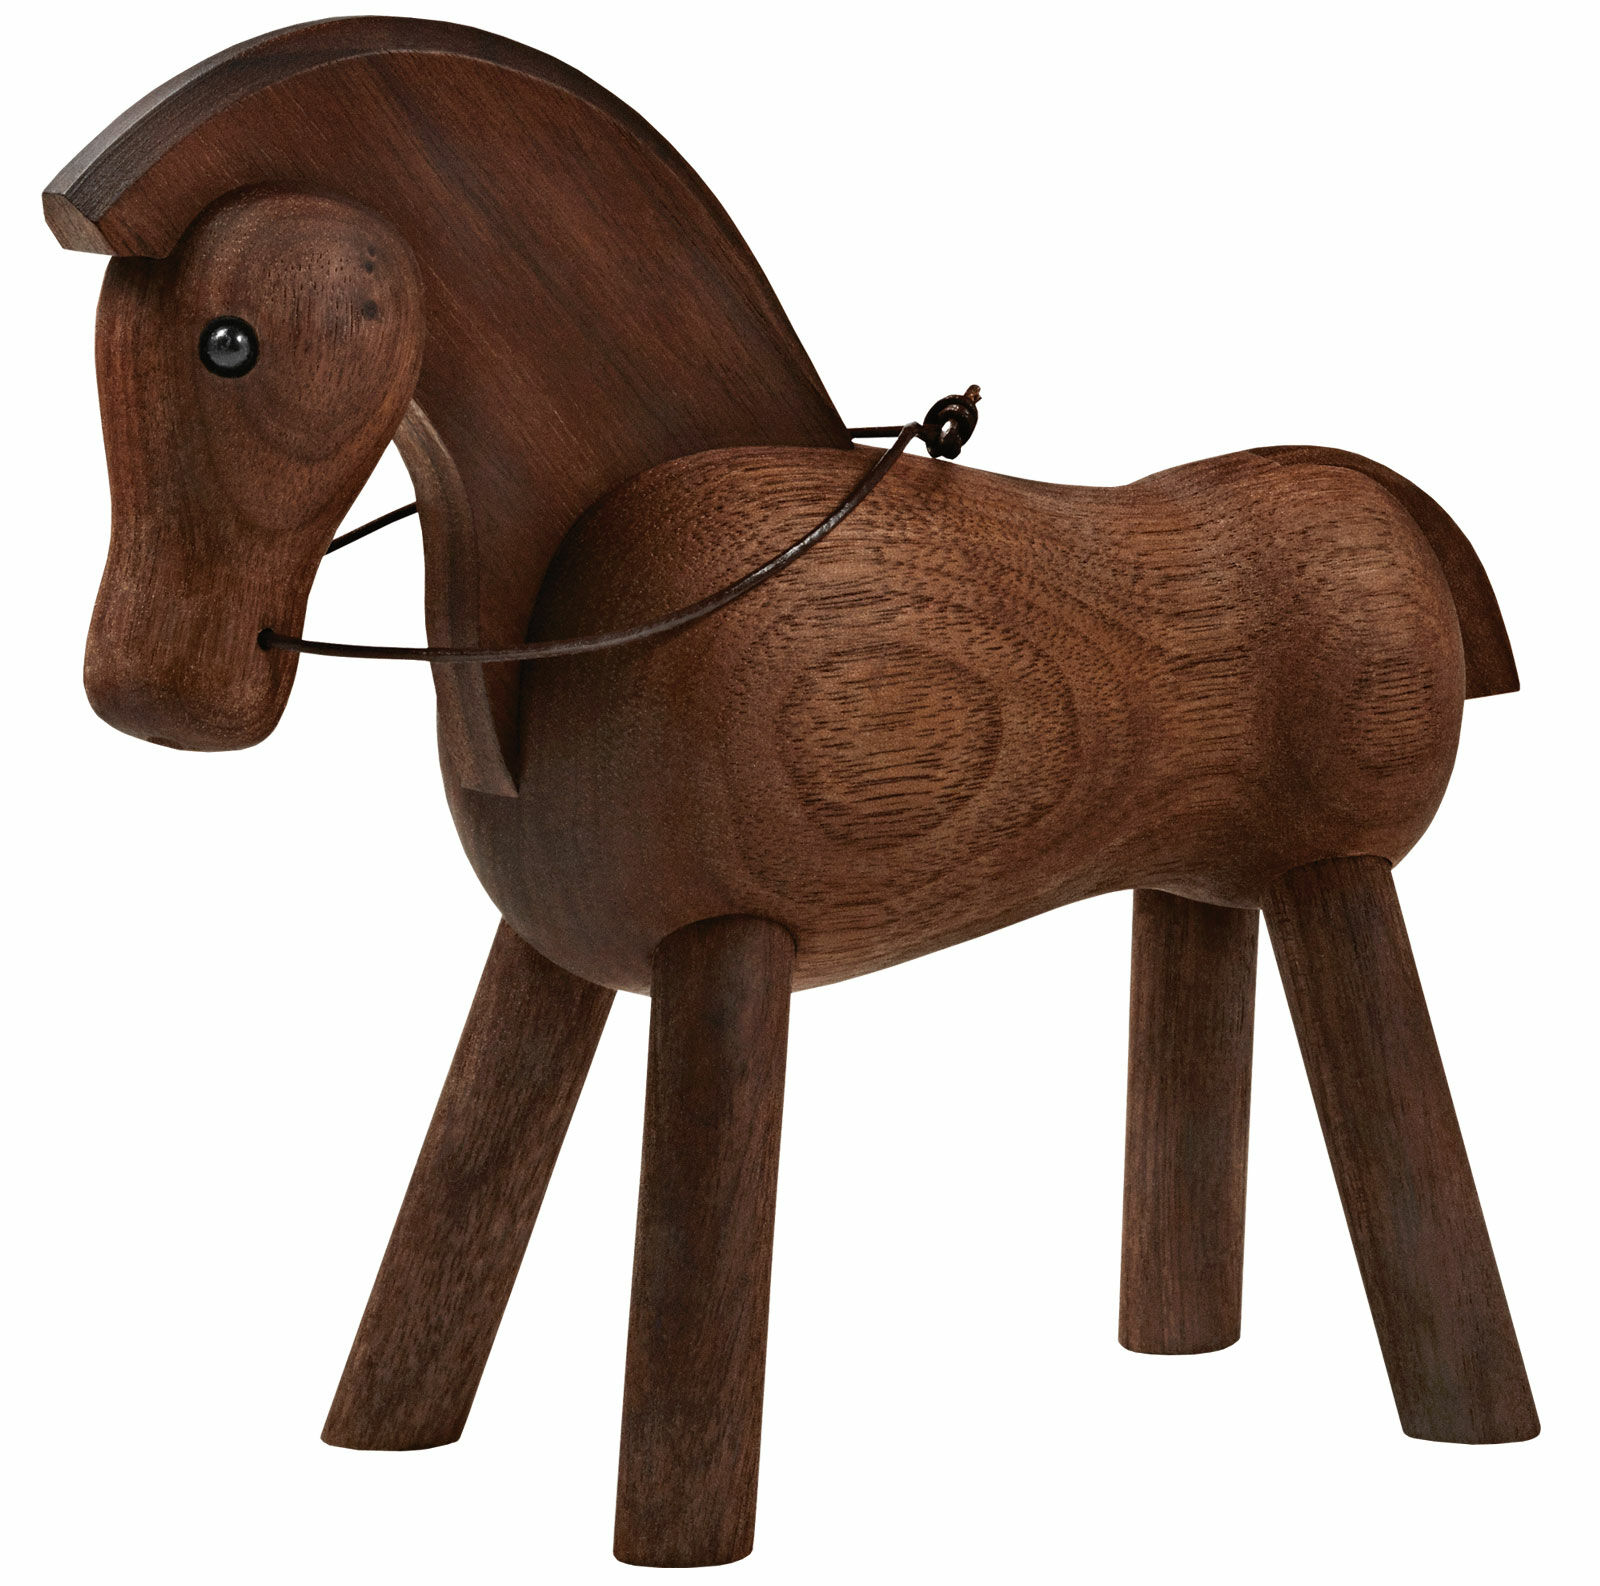 Holzfigur "Pferd" von Kay Bojesen